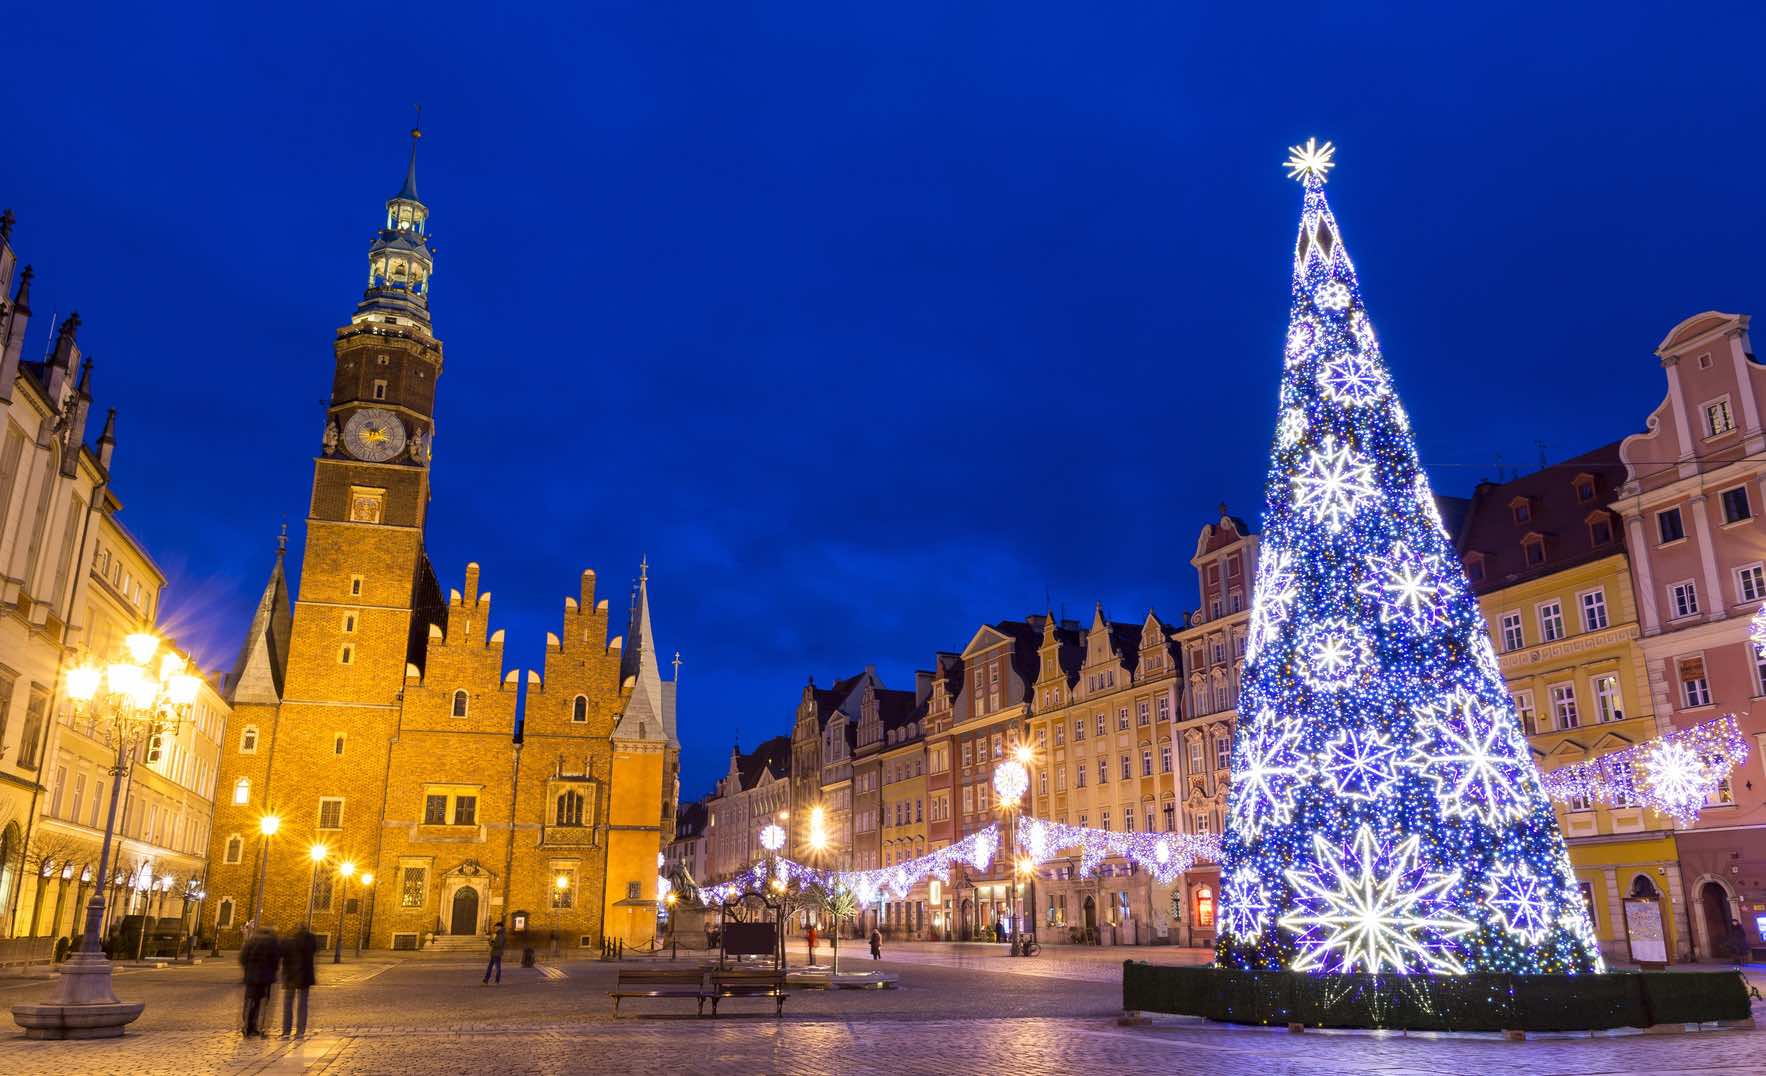 Natale Quando Si Festeggia.Il Natale In Polonia Come Si Festeggia Il Natale A Breslavia